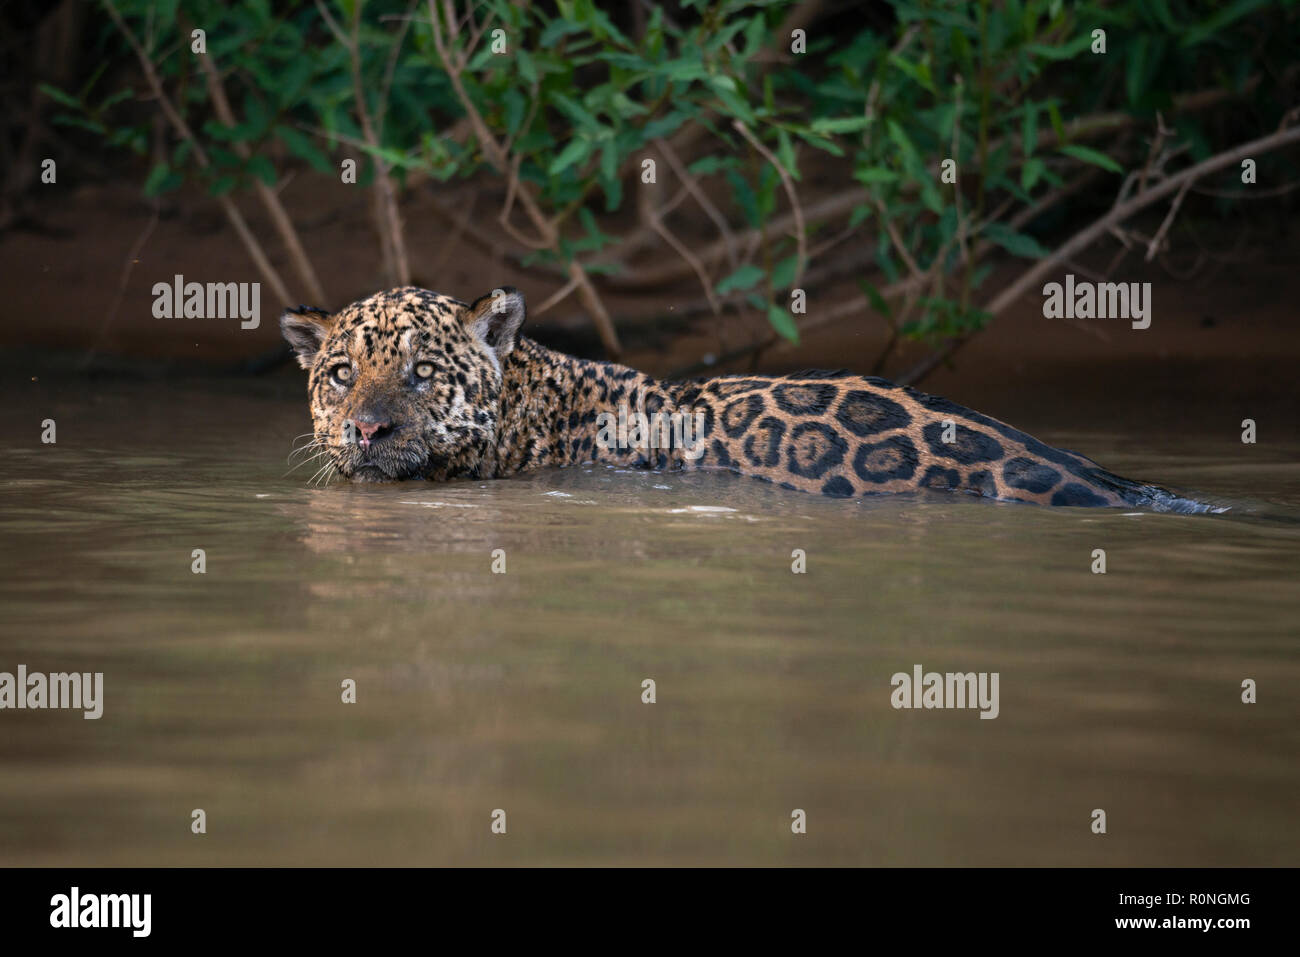 A Jaguar (Panthera onca) from North Pantanal Stock Photo